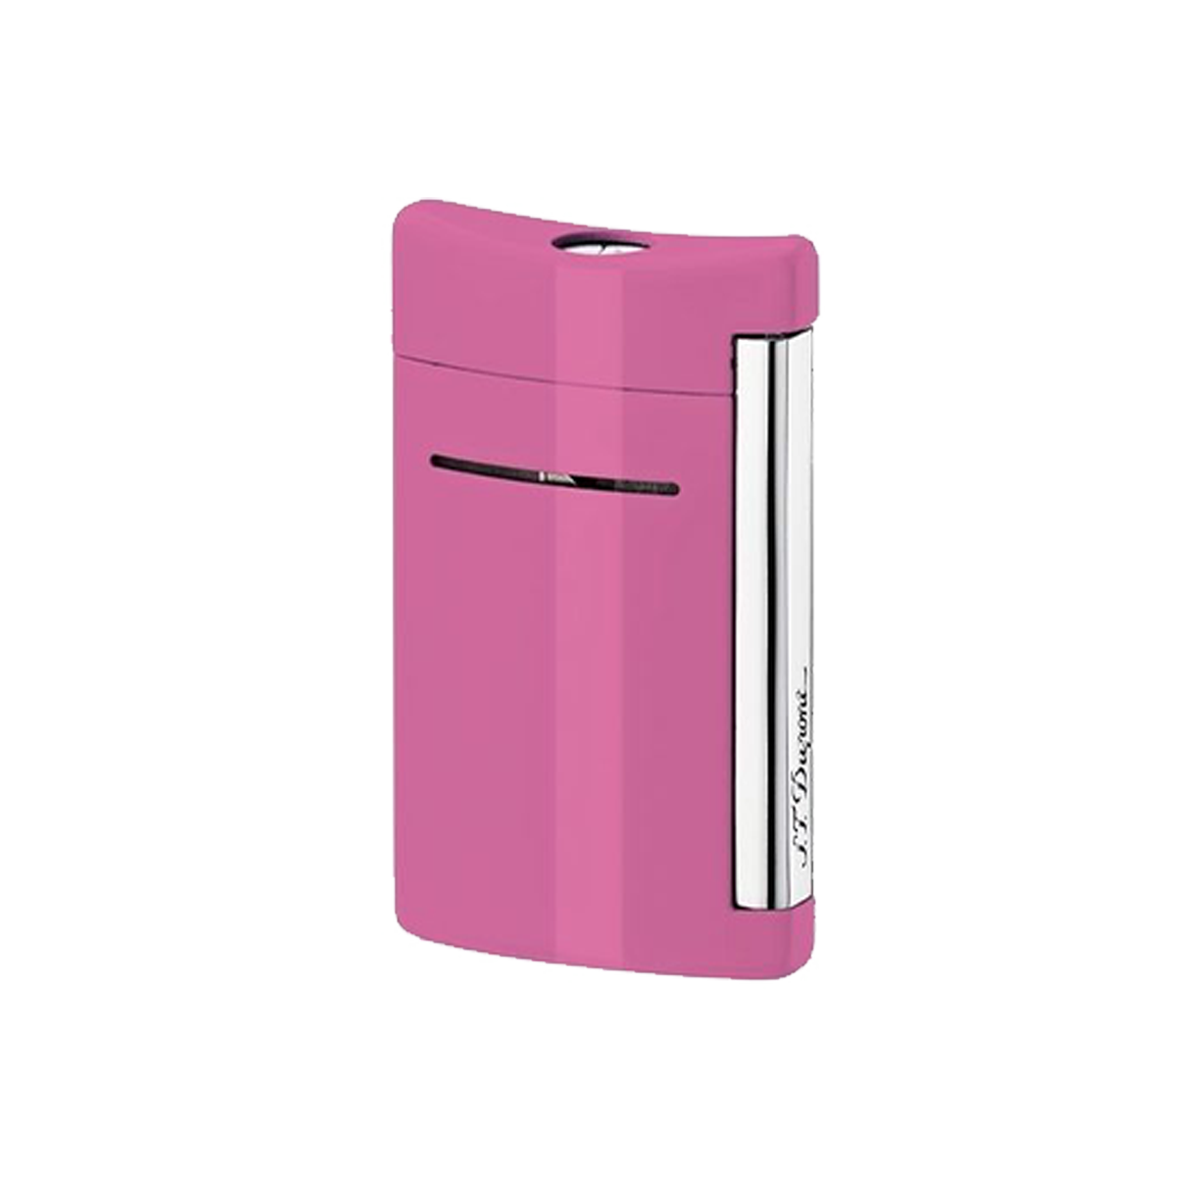 Зажигалка Minijet 10034 Цвет Розовый Отделка натуральным лаком и хромом | S.T. Dupont